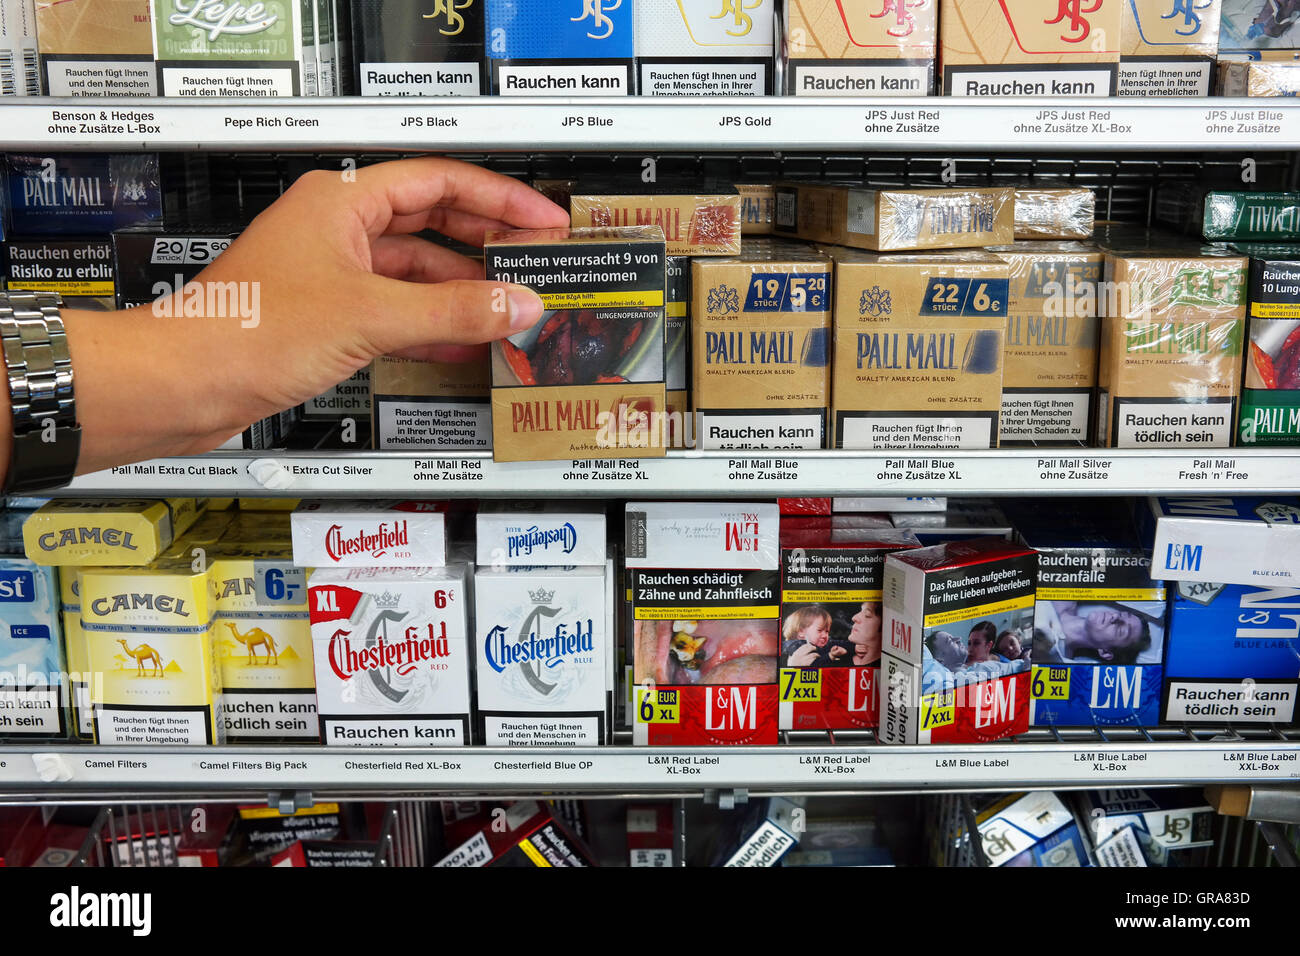 Confezioni di sigarette con immagini sui pacchetti di sigarette per illustrare i pericoli del fumo. Foto Stock